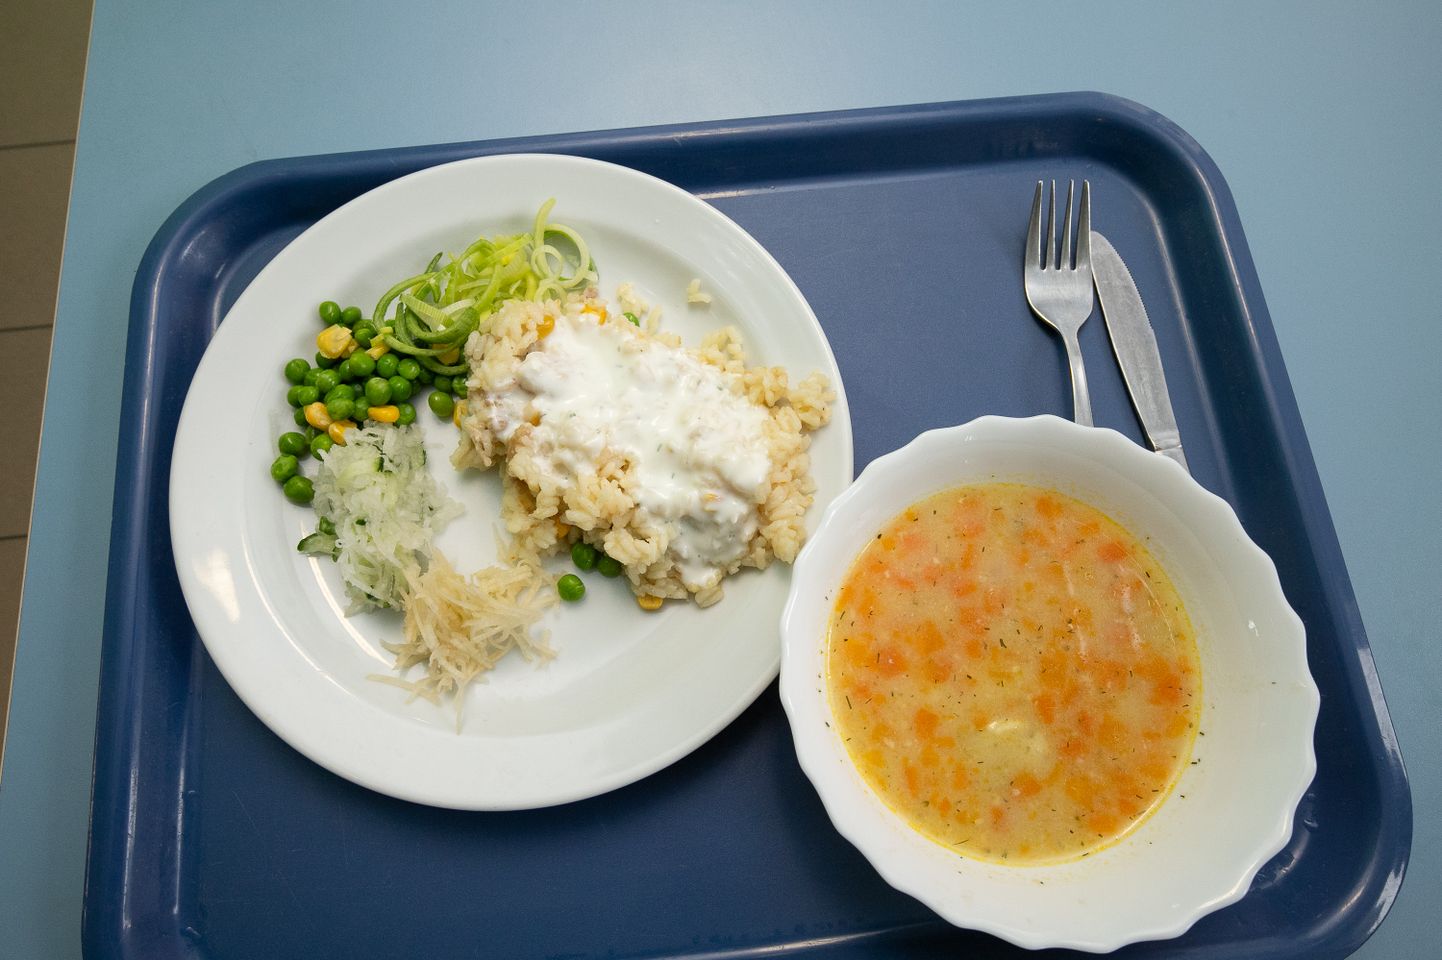 Oktoobri alguses toimus avatud koolisööklate nädal, et peale õpilaste saaksid ka teised toitu maitsma tulla. Pildil on kanarisoto ja lõhesupp.